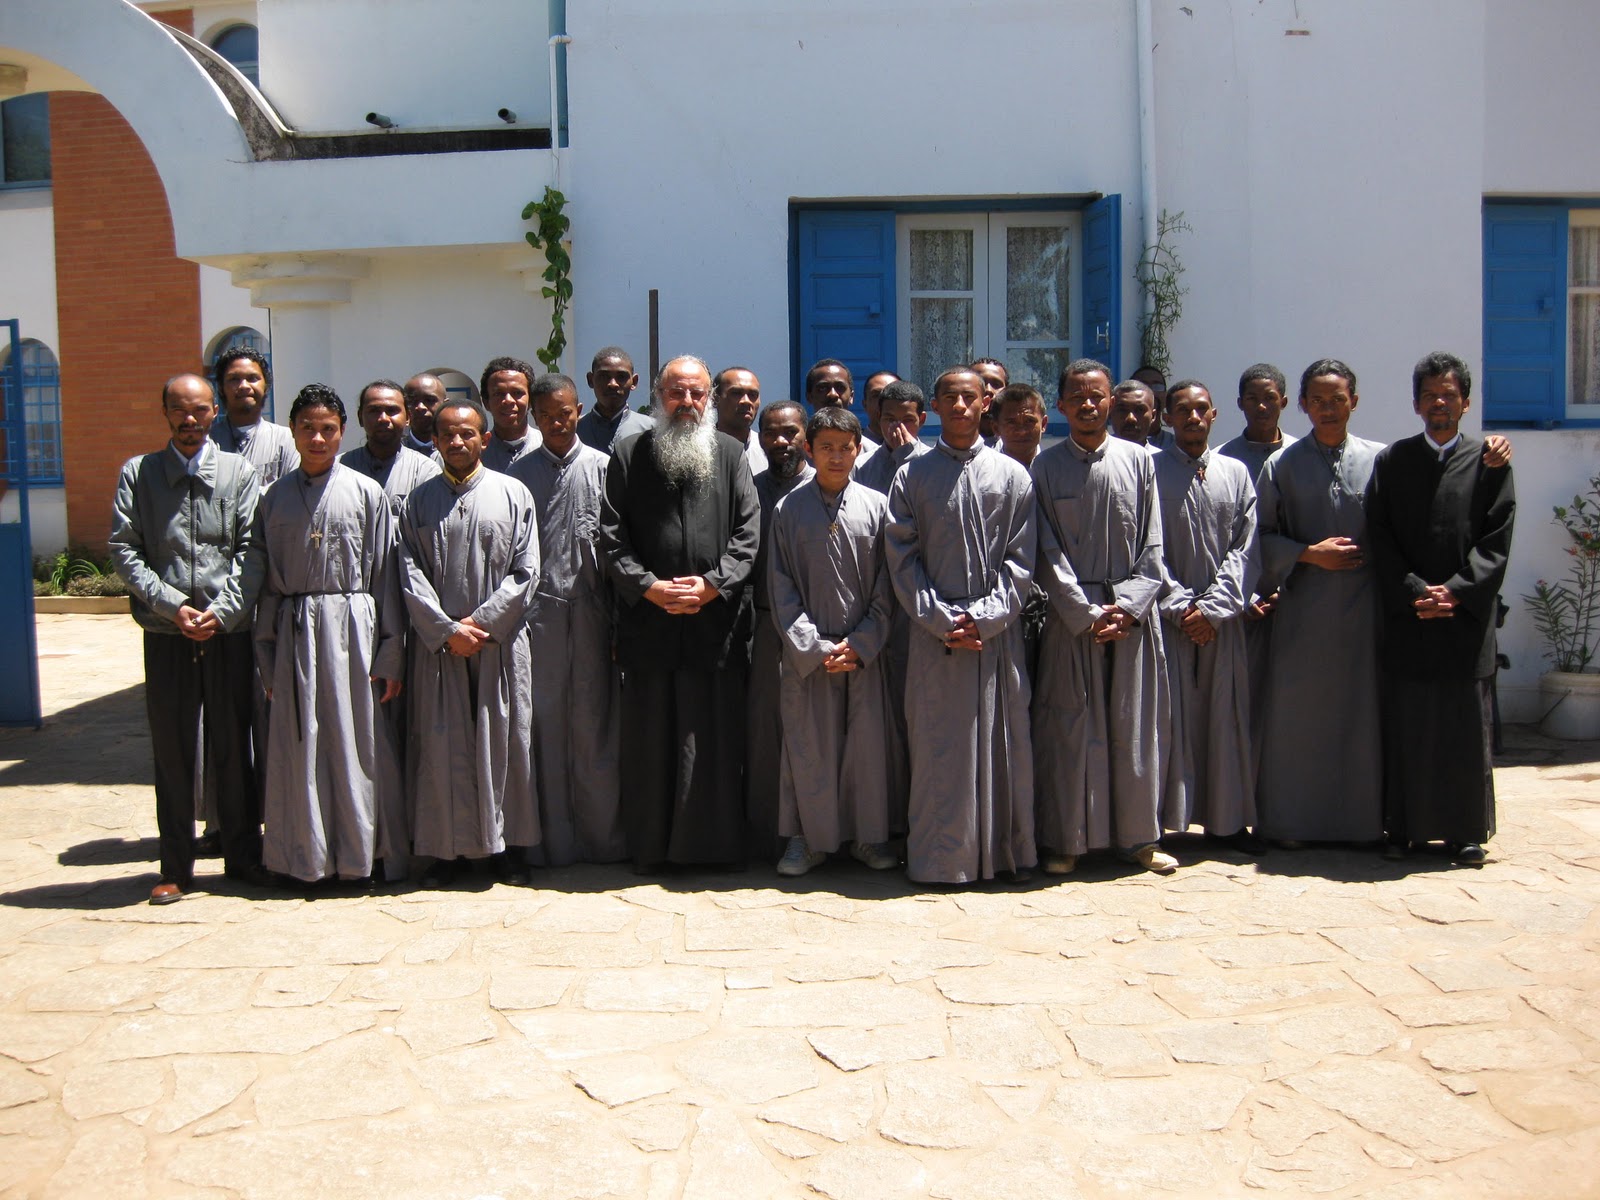 L’archevêque Ignace d’Antananarivo et du Nord de Madagascar du Patriarcat d’Alexandrie lancé un avertissement à ses prêtres